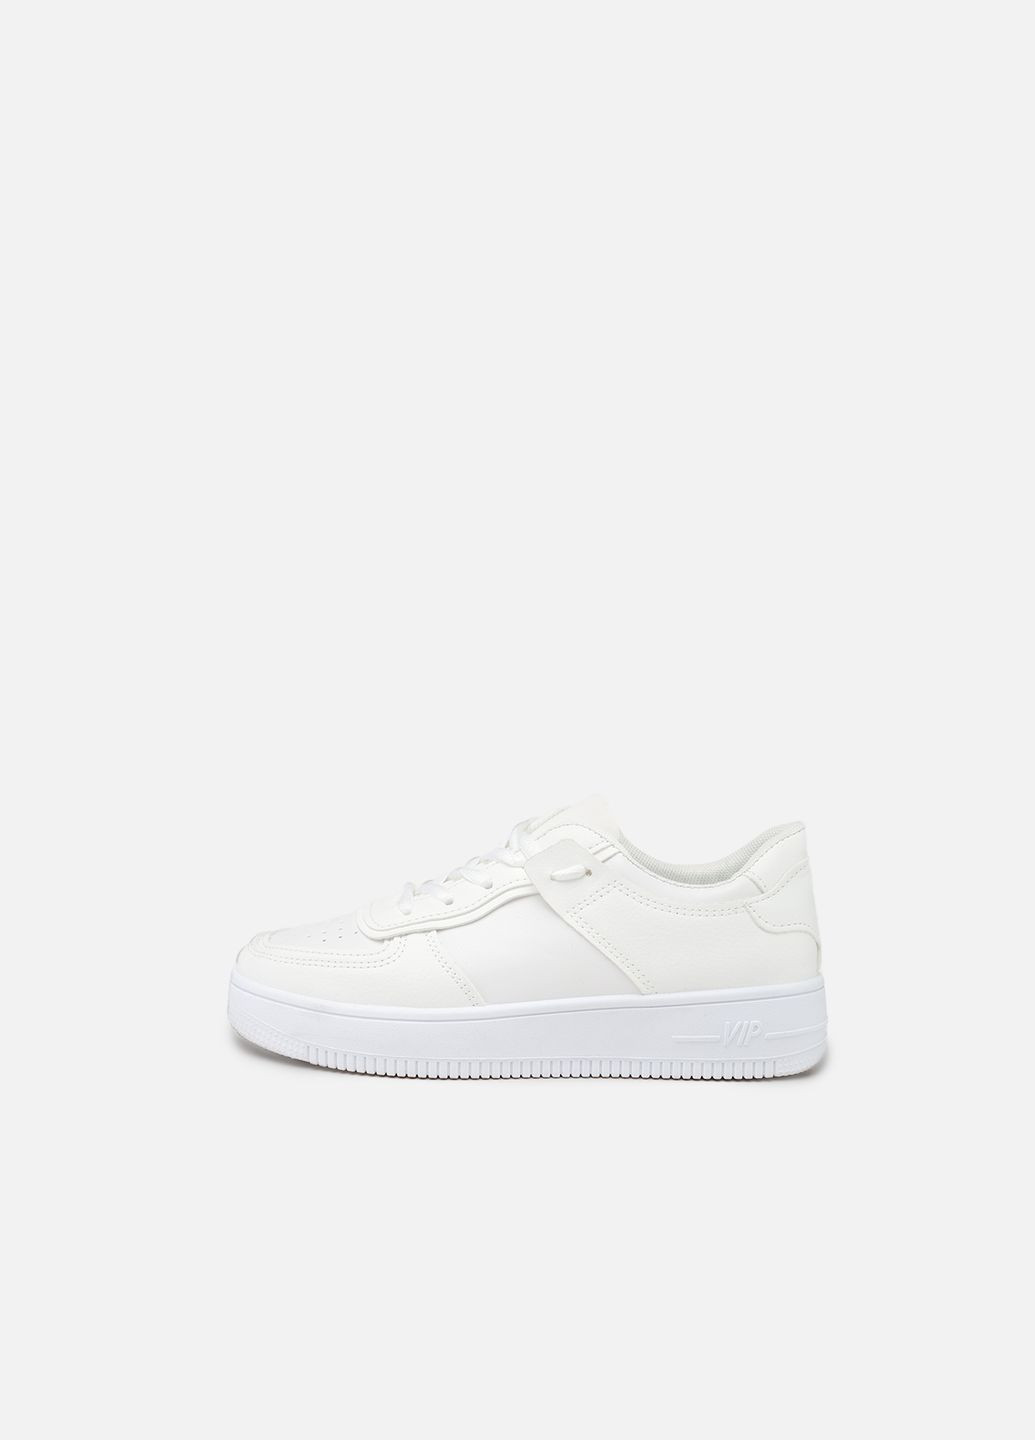 Белые демисезонные женские кроссовки цвет белый цб-00243094 Ailaifa